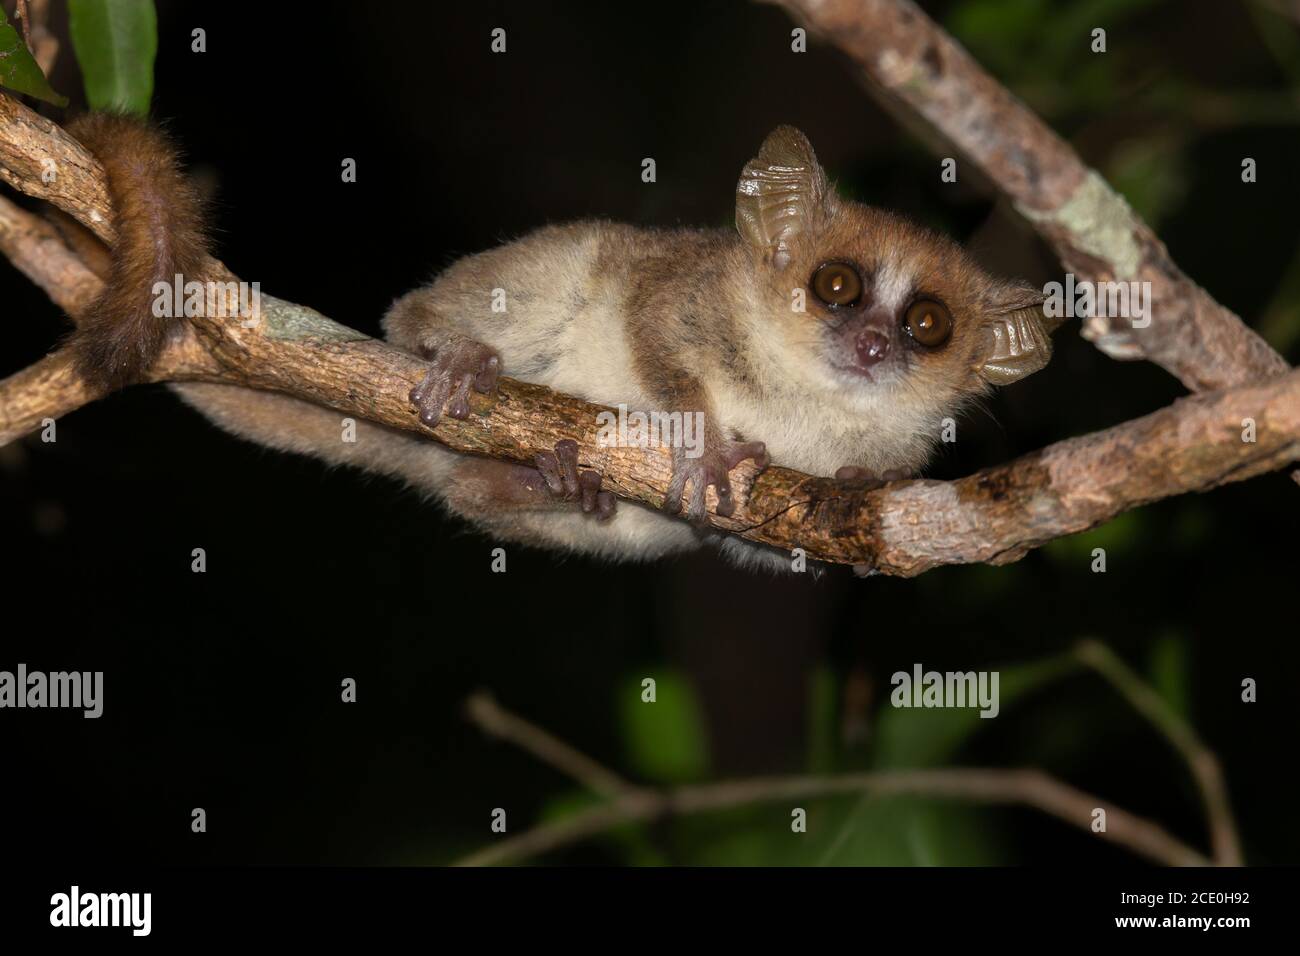 Ein kleiner Mauslemur auf einem Ast, nachts genommen Stockfoto